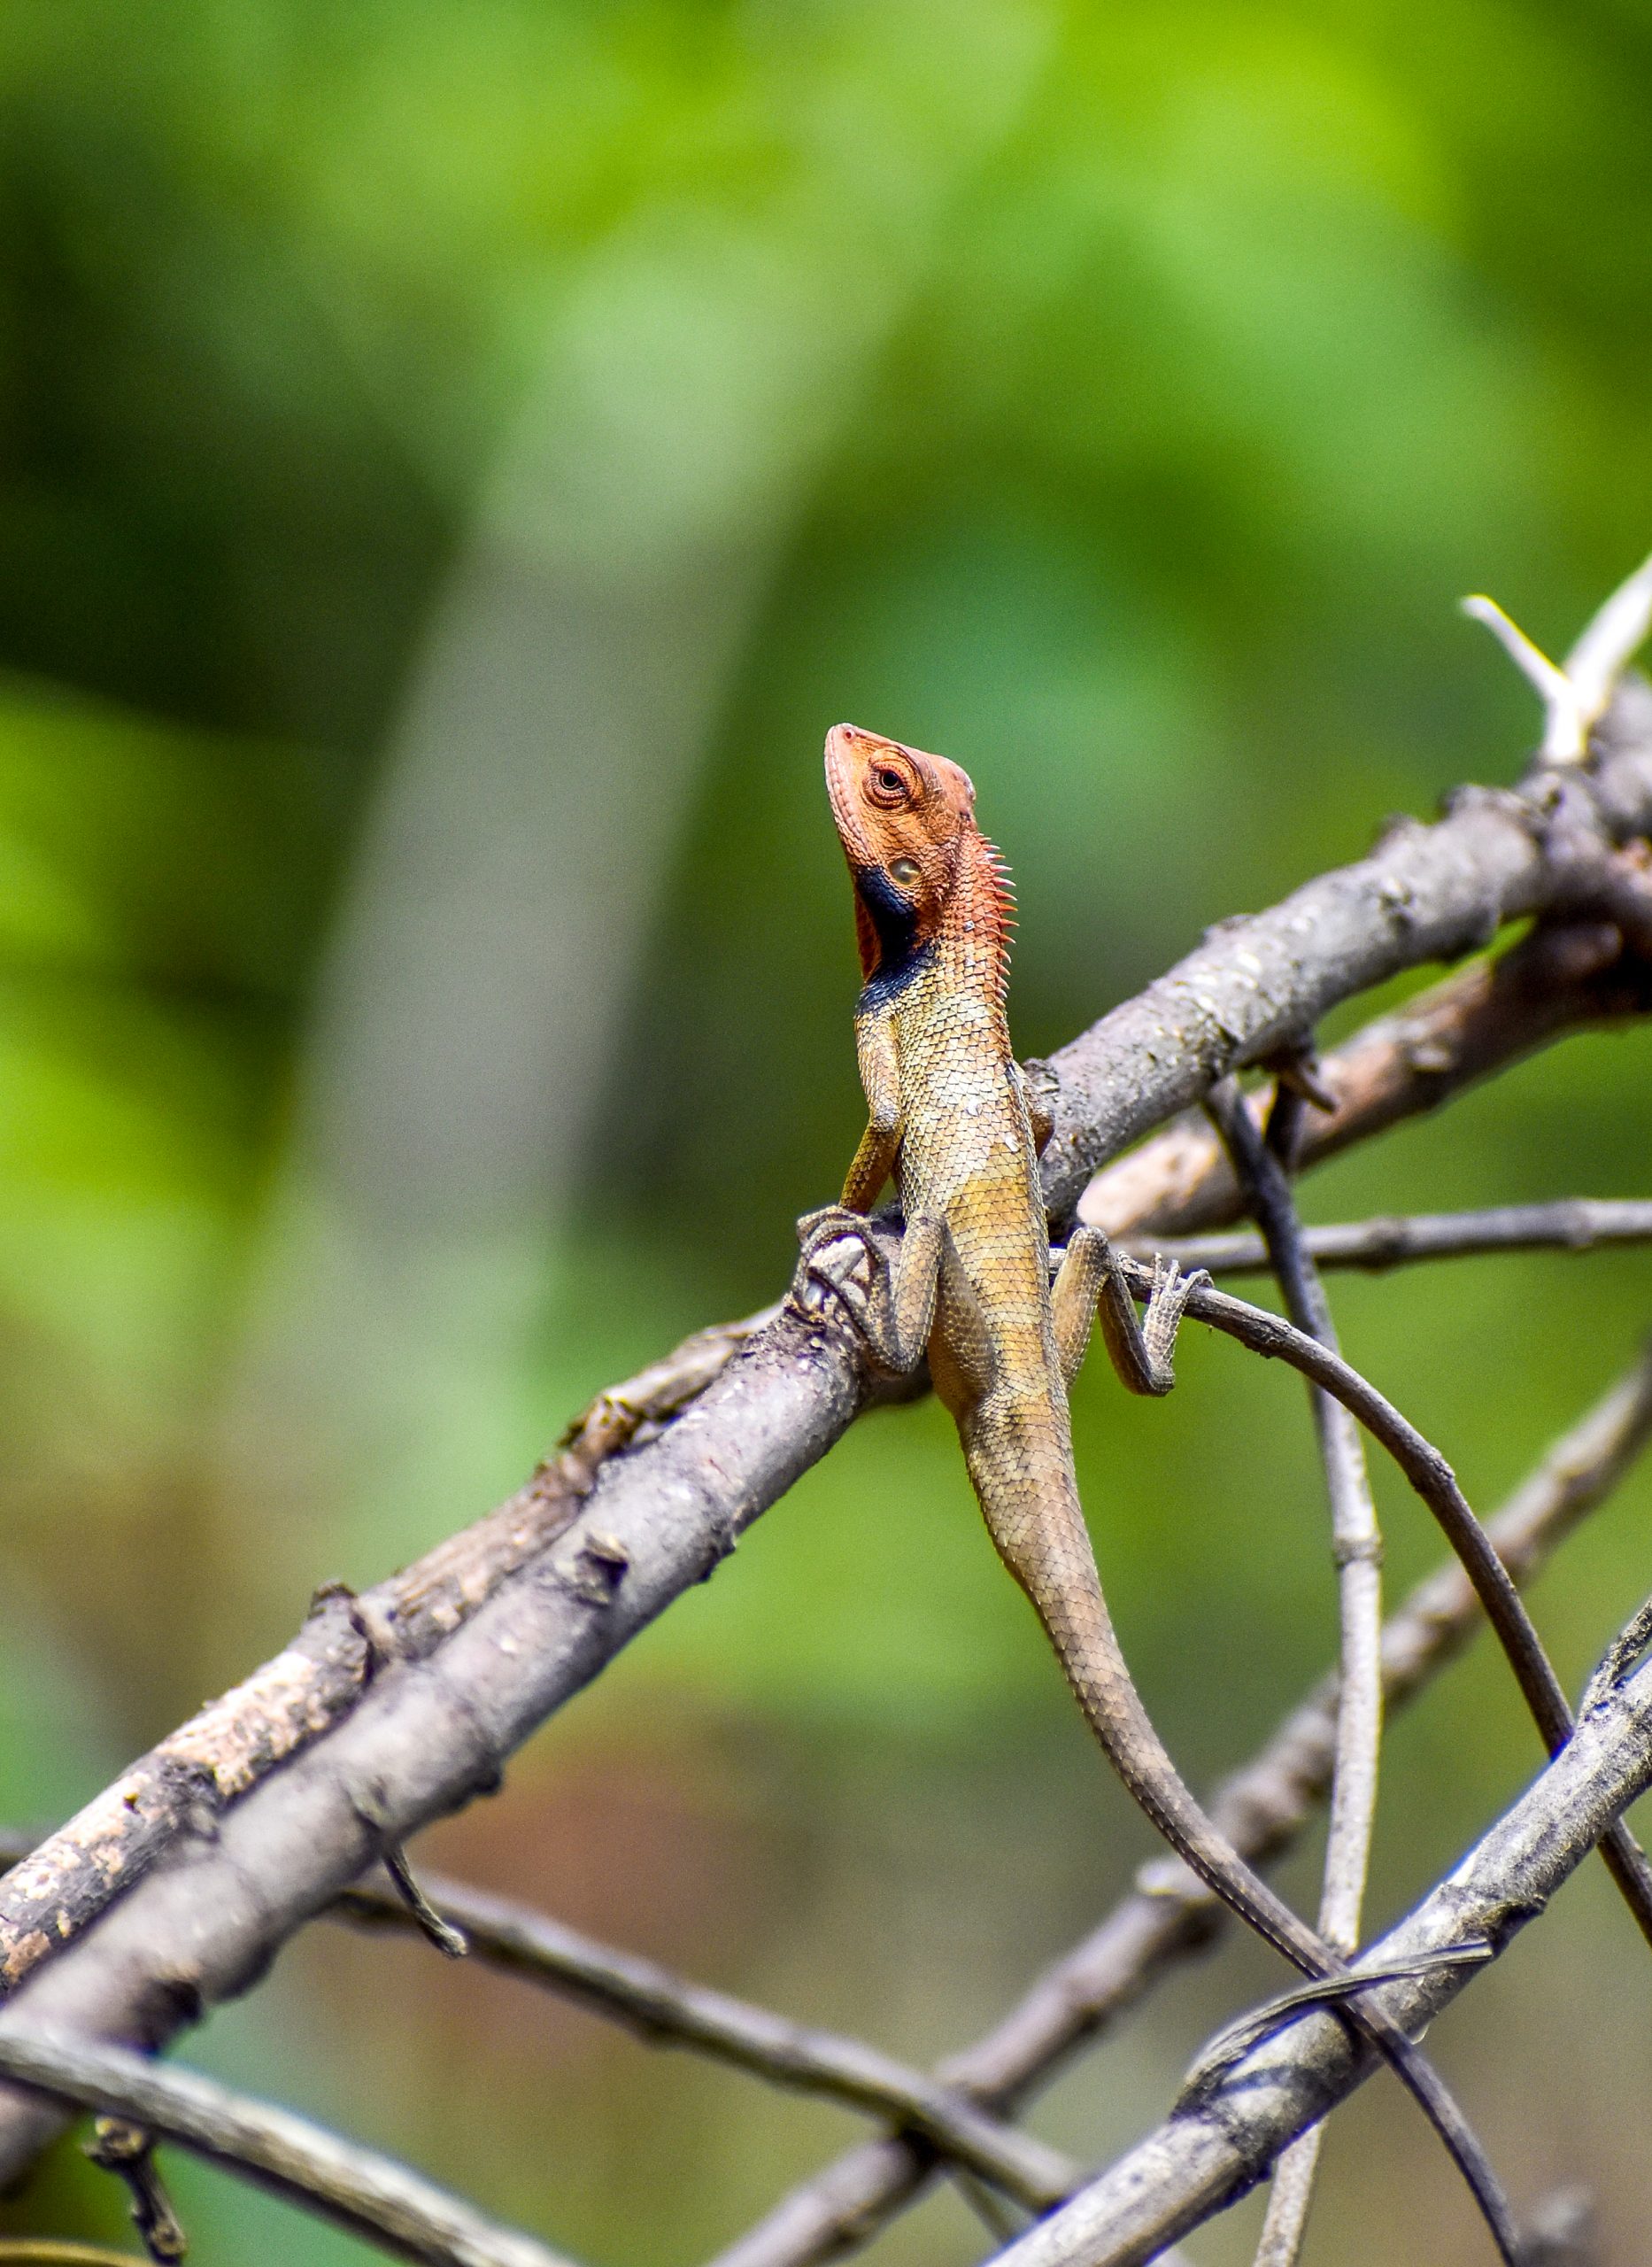 garden lizard on a branch